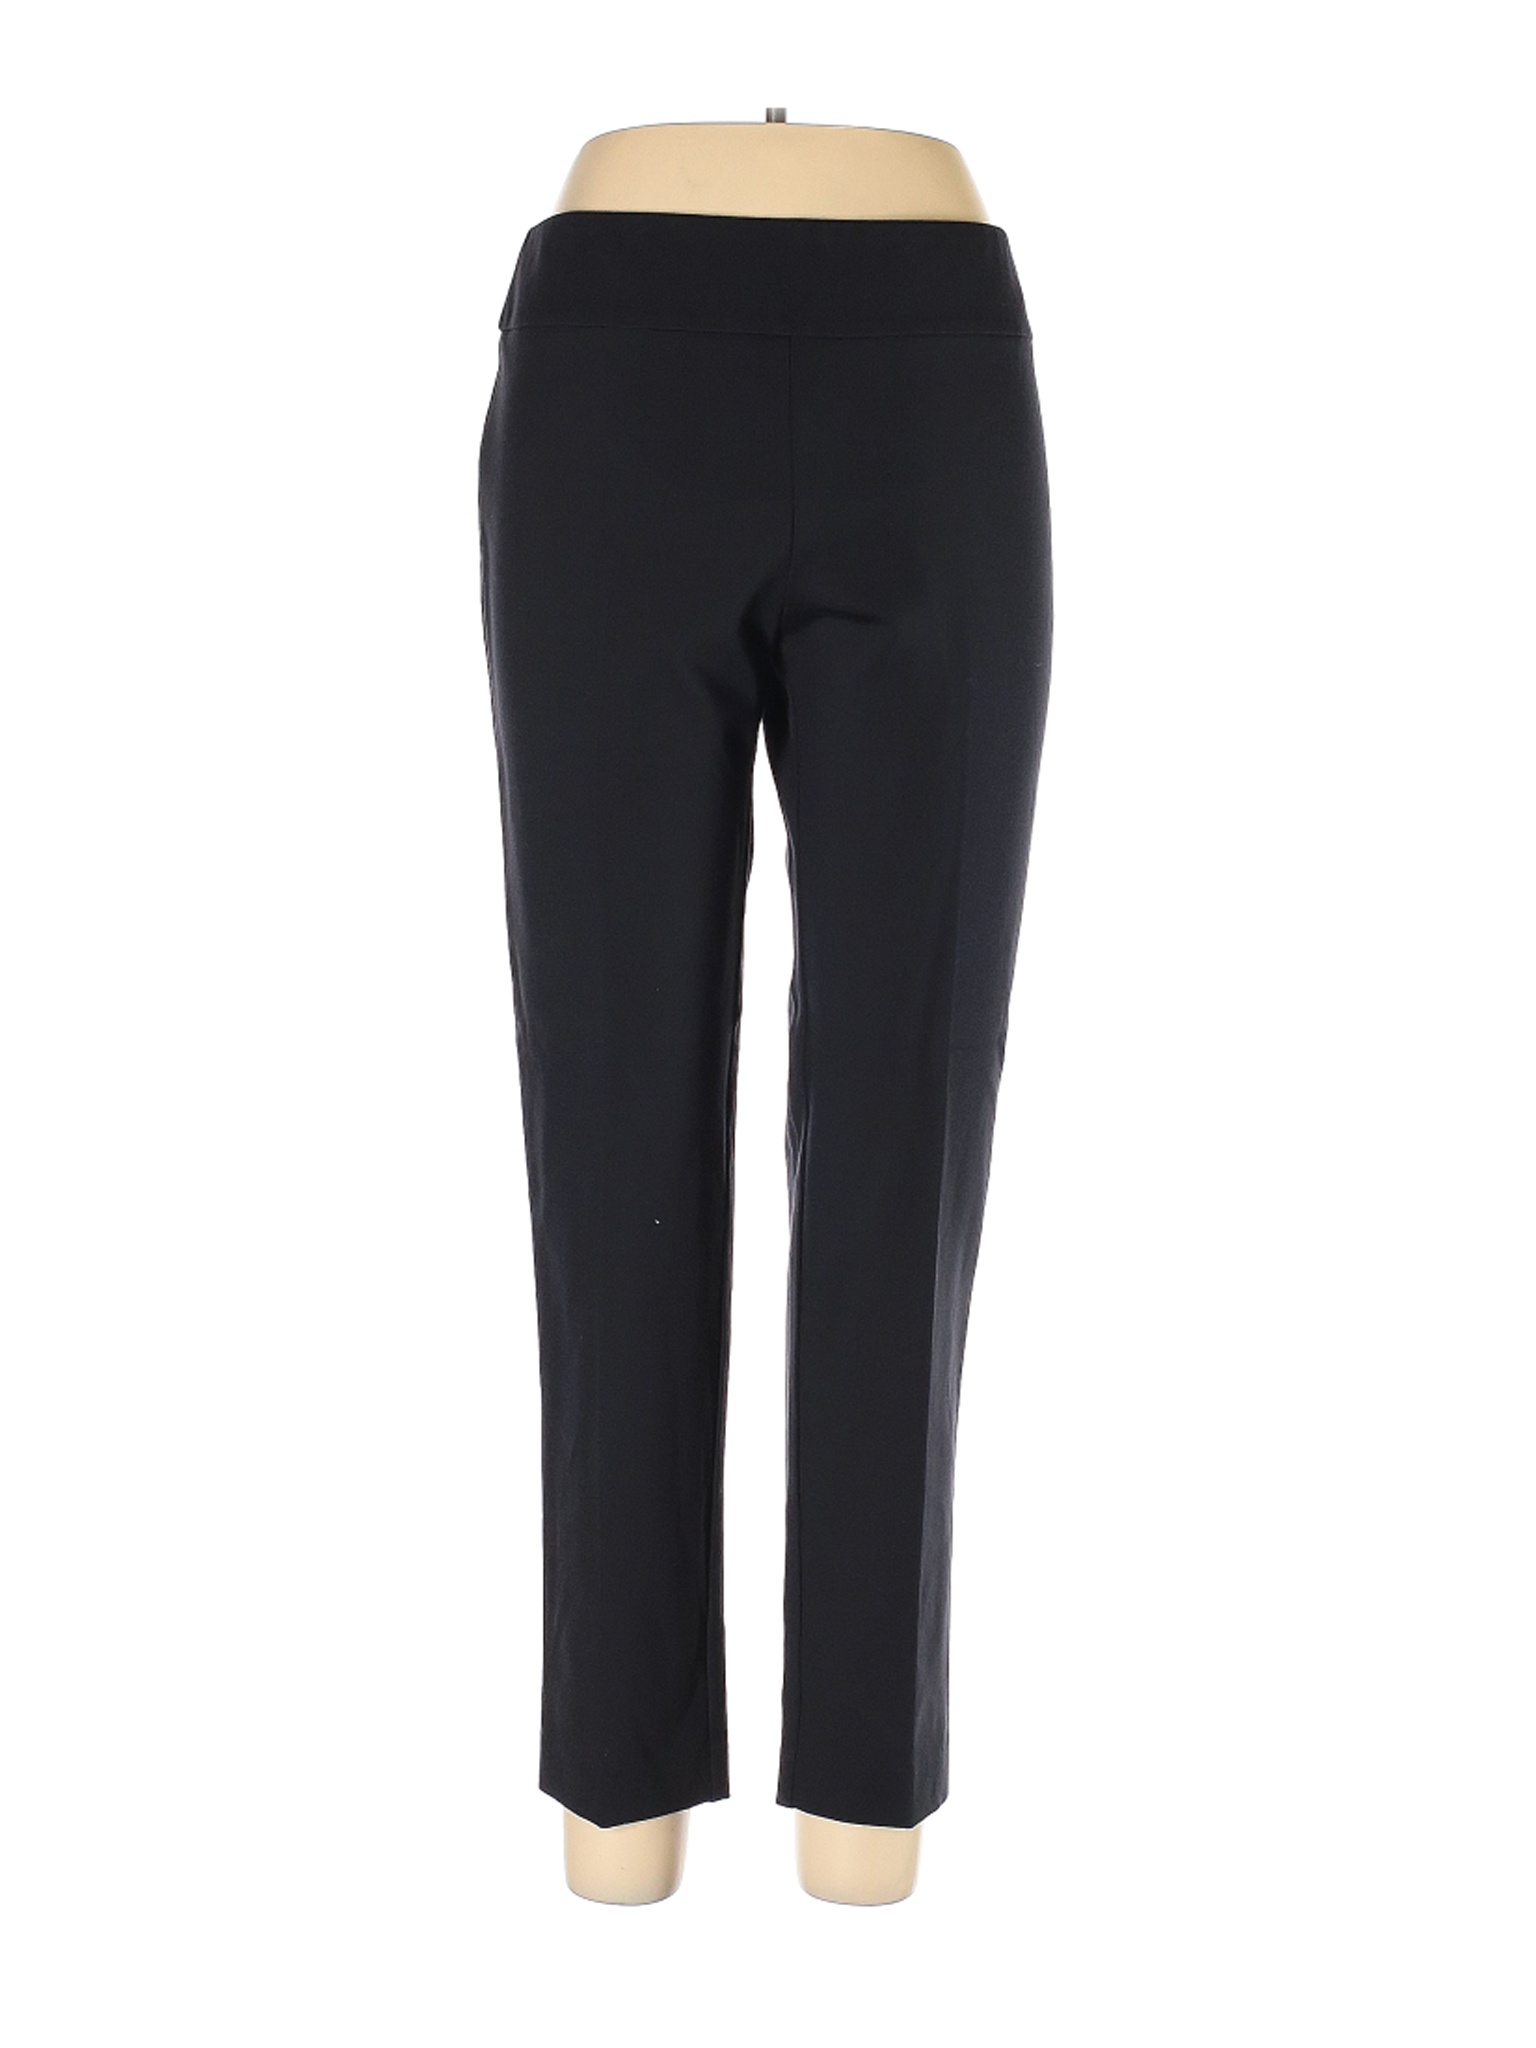 Estelle and Finn Women Black Dress Pants 10 | eBay